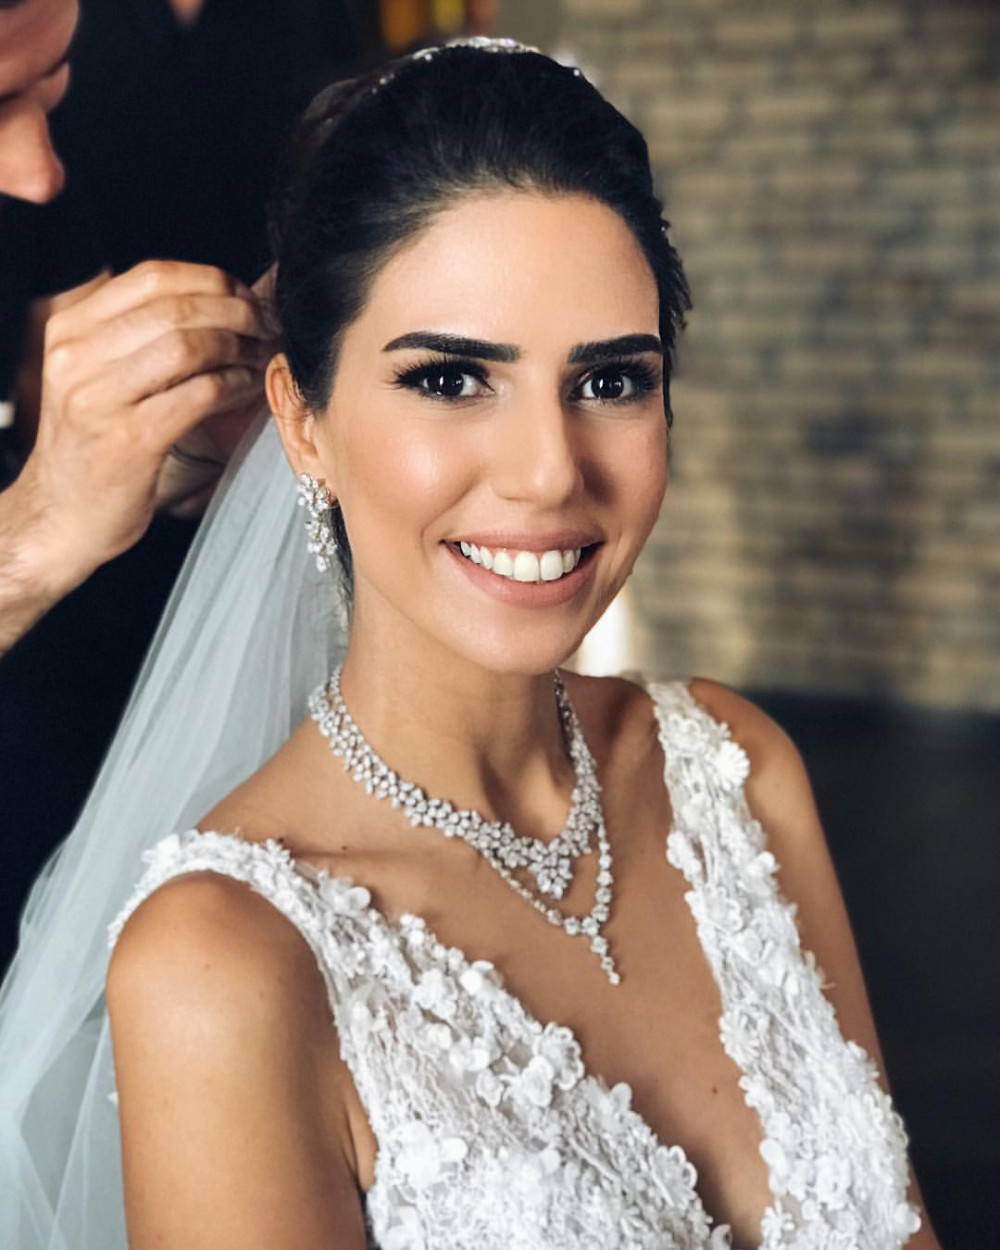 Ali Sunal ve Nazlı Kurbanzade evlendi